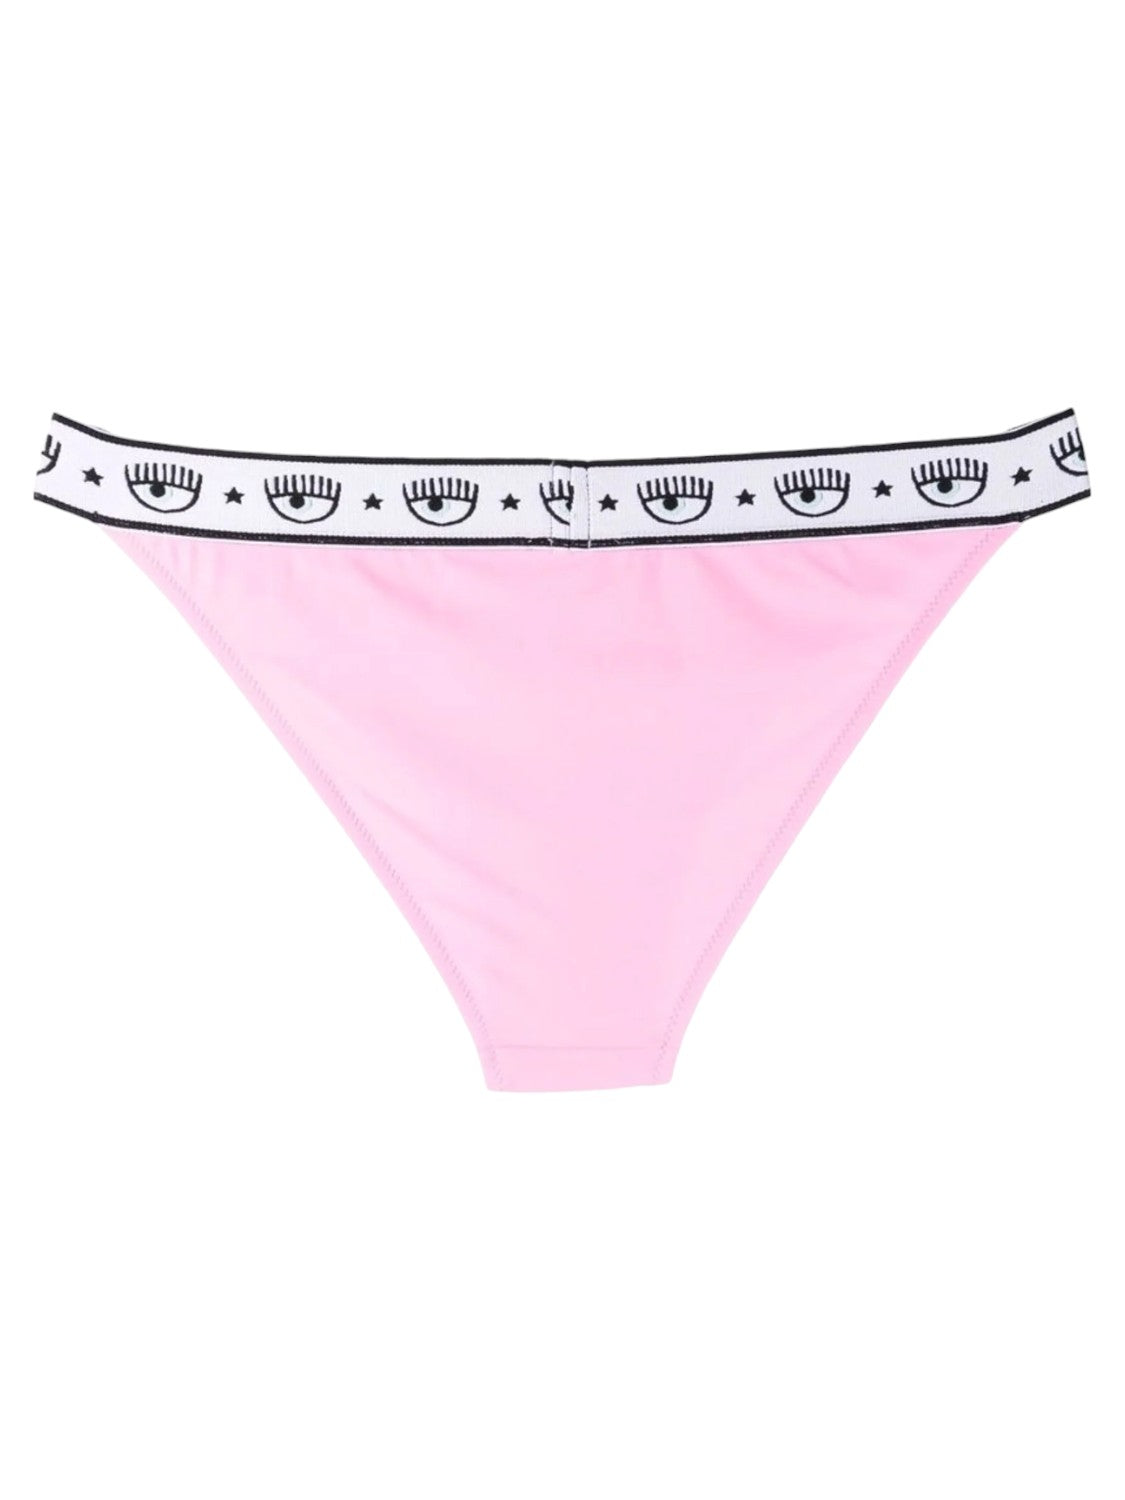 Slip Bikini Logomania-Costumi da bagno-Chiara Ferragni-Vittorio Citro Boutique